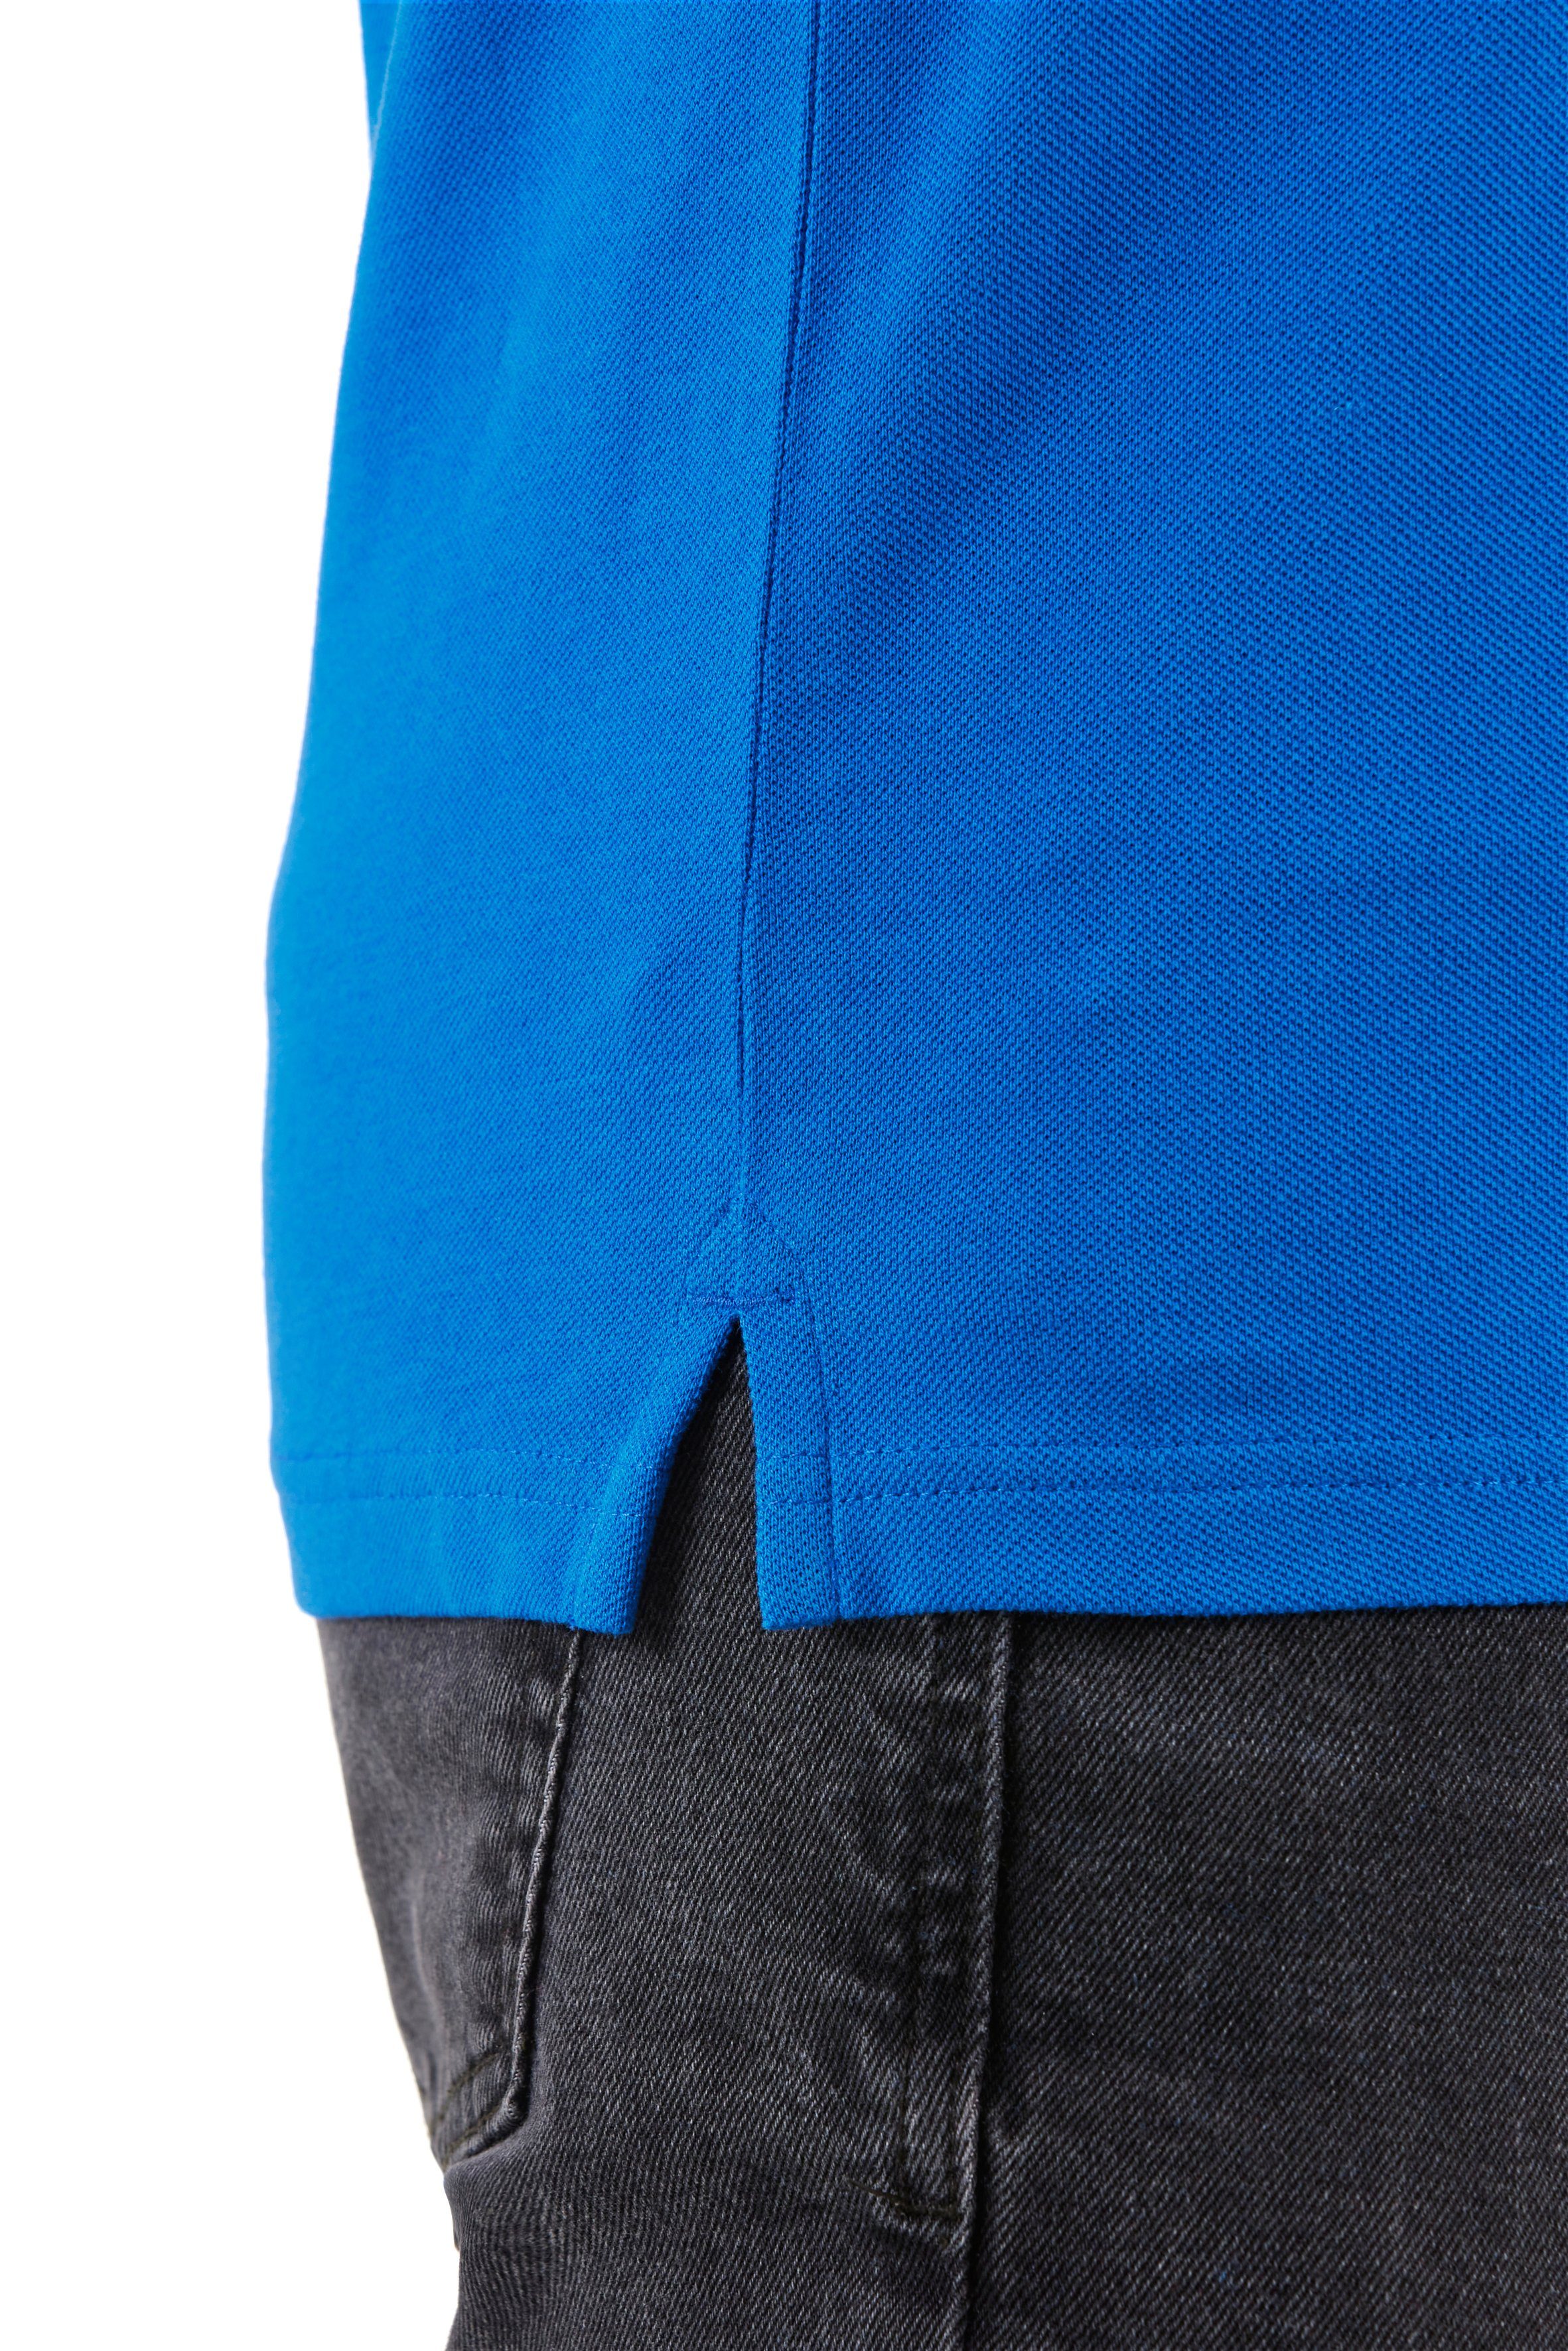 Northern Country Poloshirt zum Arbeiten, mit Blue Lapis am Tragegefühl, angenehmes Arm Stifthalter